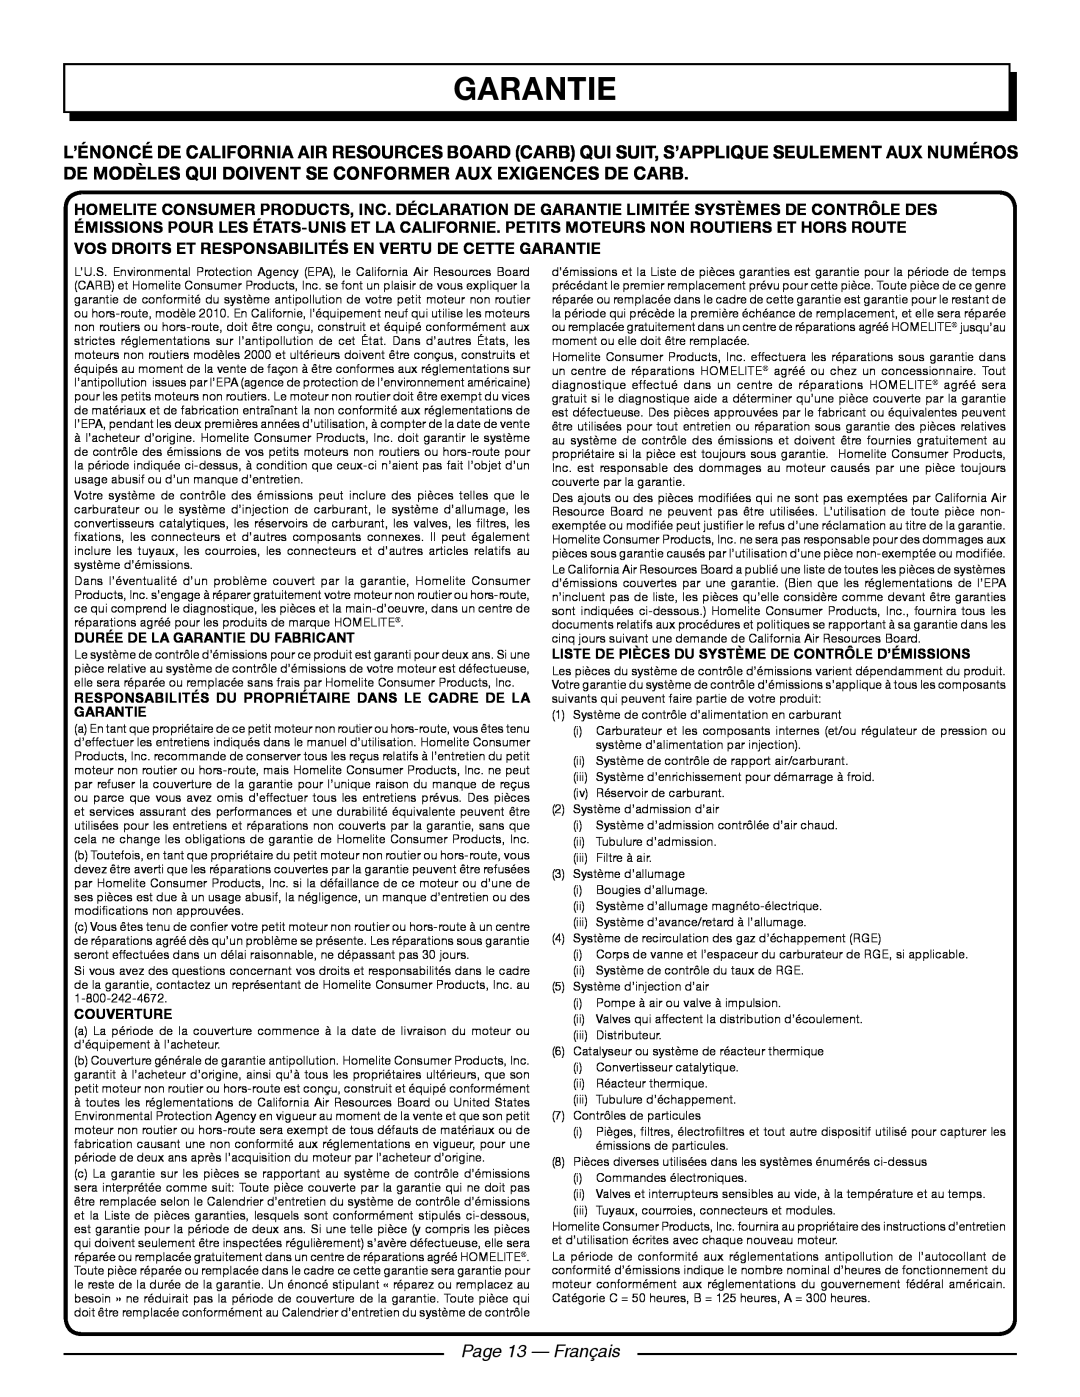 Homelite UT09521 manuel dutilisation Page 13 - Français, Durée De La Garantie Du Fabricant, Couverture 